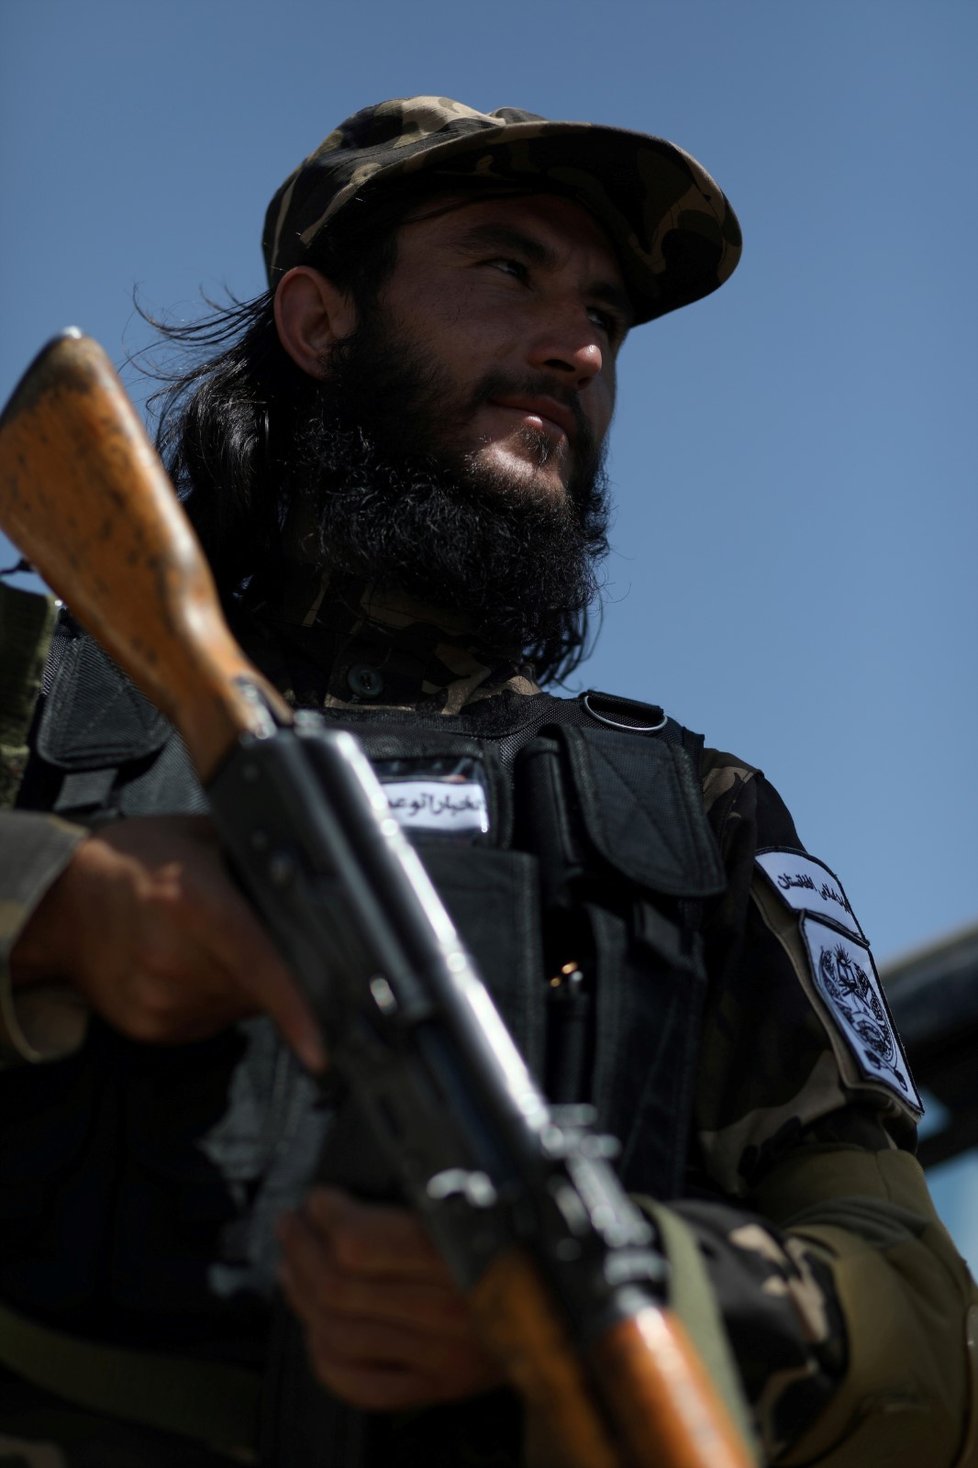 Speciální jednotky Tálibánu v Kábulu.